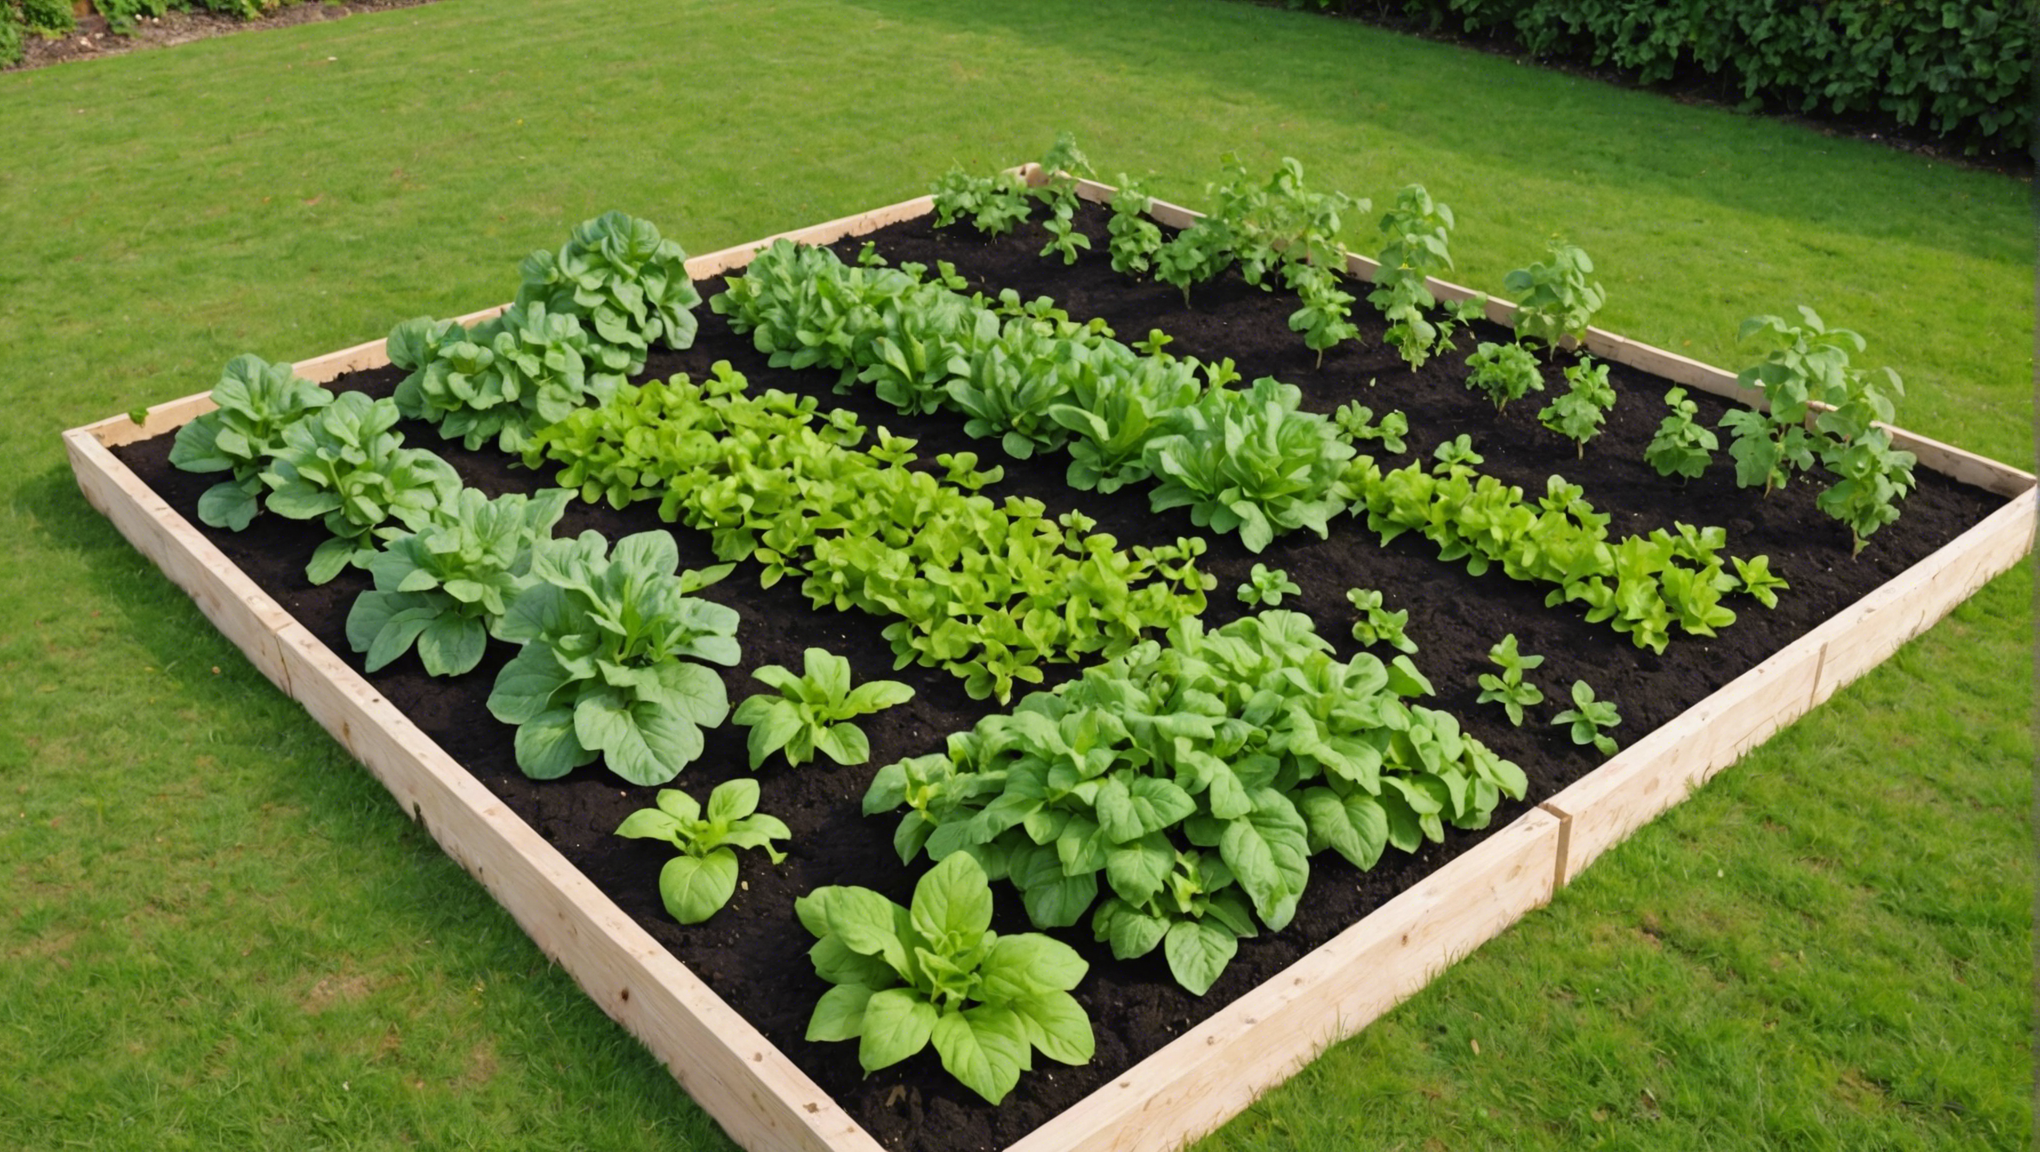 découvrez les étapes essentielles pour réussir le mélange de terre afin d'optimiser la croissance de vos plantes dans les carrés potager avec du terreau de qualité.